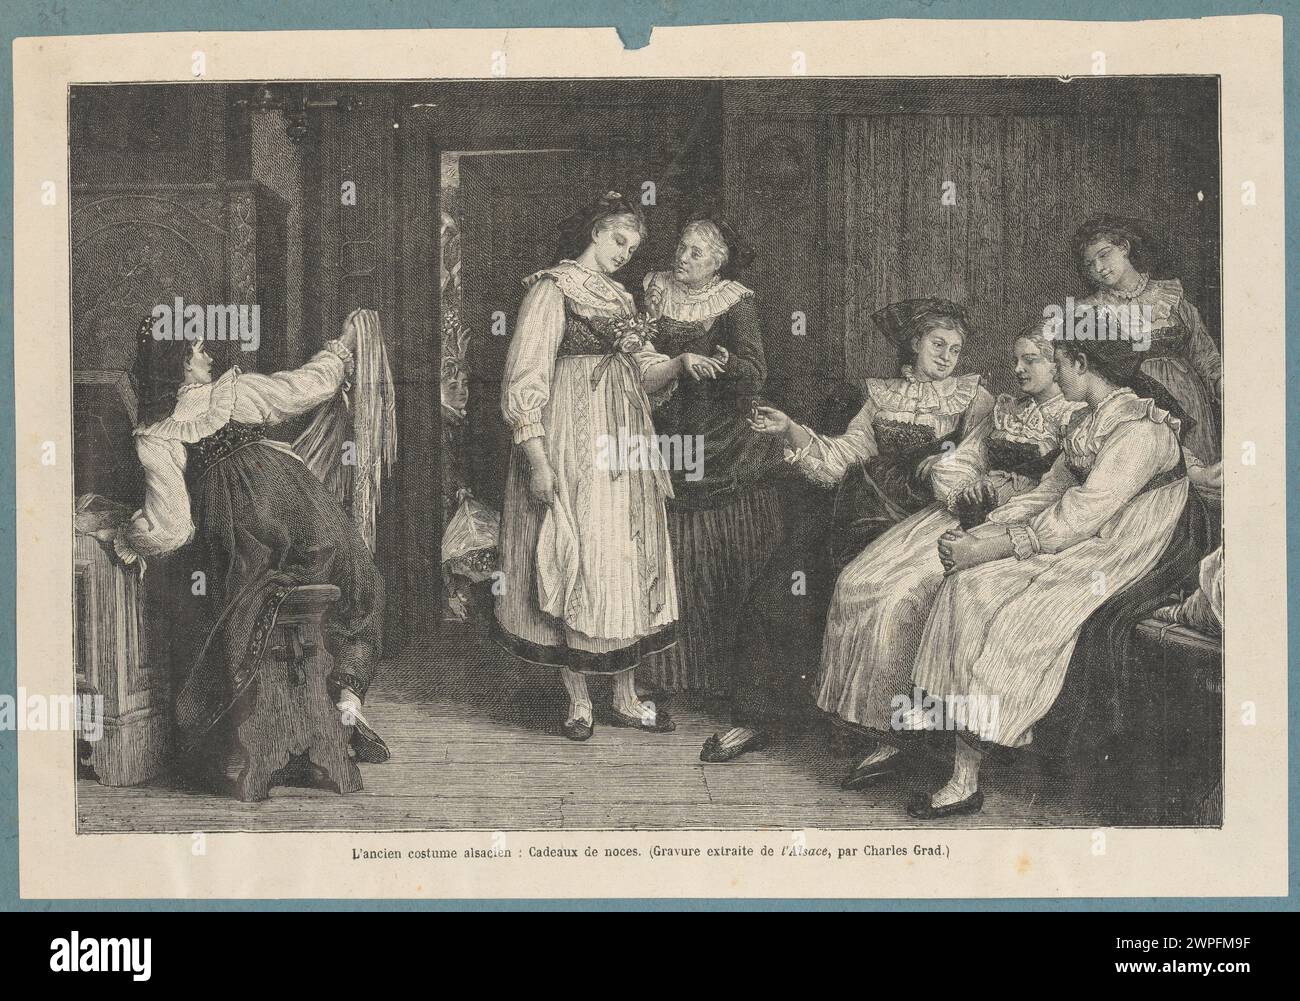 Ein ehemaliges elsässisches Outfit. Hochzeitsgeschenk; Barbant, Charles (1844-1922), Pabst, Camille Alfred (1821-1898); 1906 (1906-00-00-1906-00-00); Stockfoto